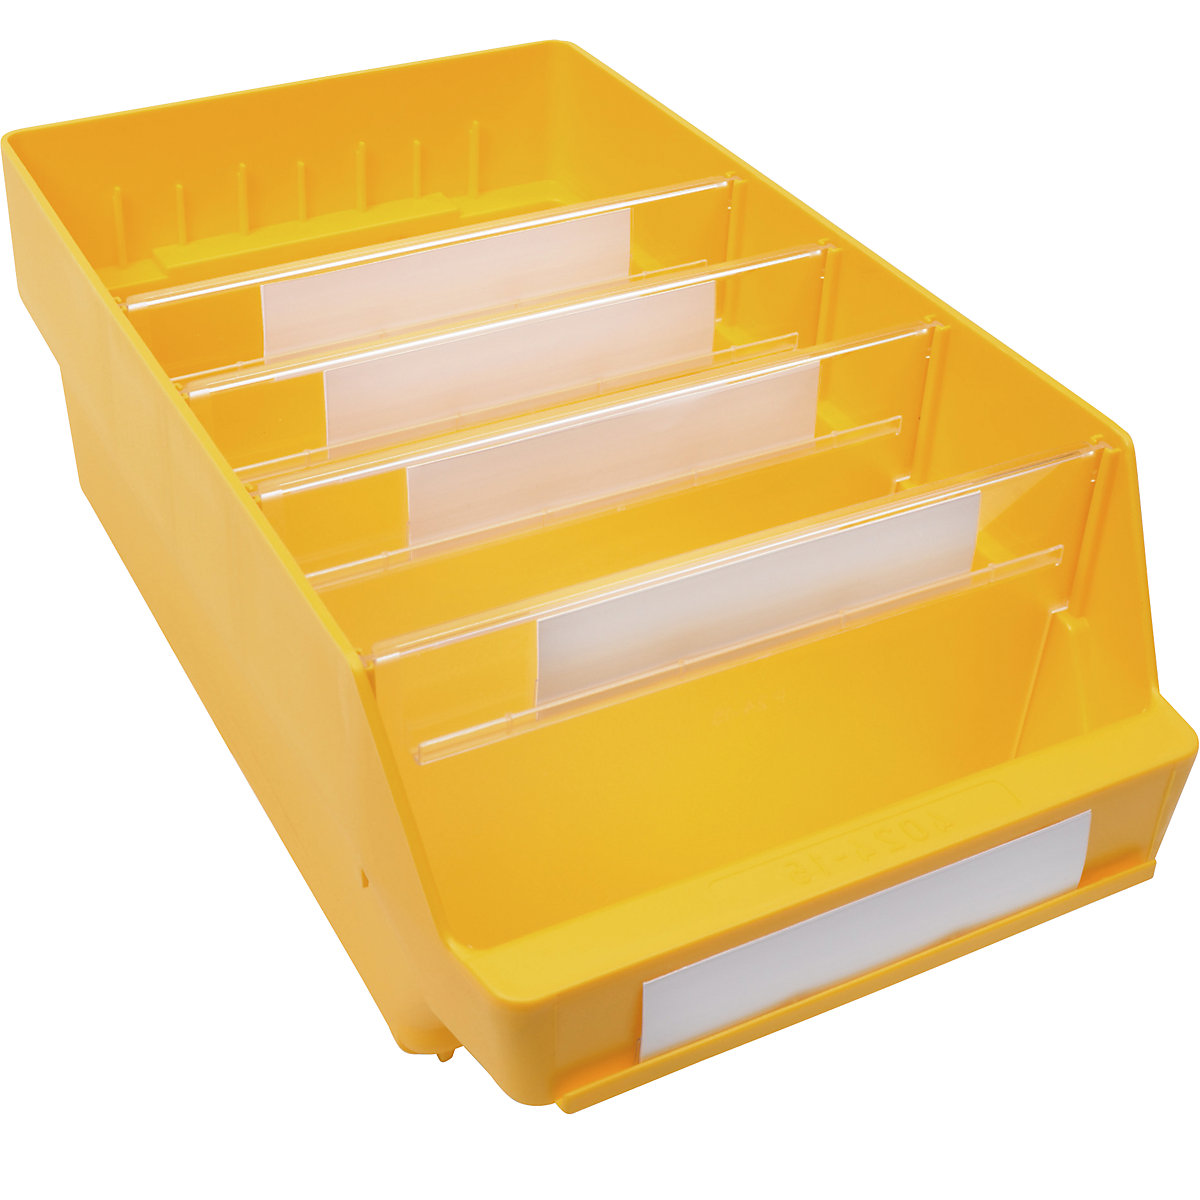 Regalkasten aus hochschlagfestem Polypropylen STEMO, gelb, LxBxH 400 x 240 x 150 mm, VE 10 Stk-21